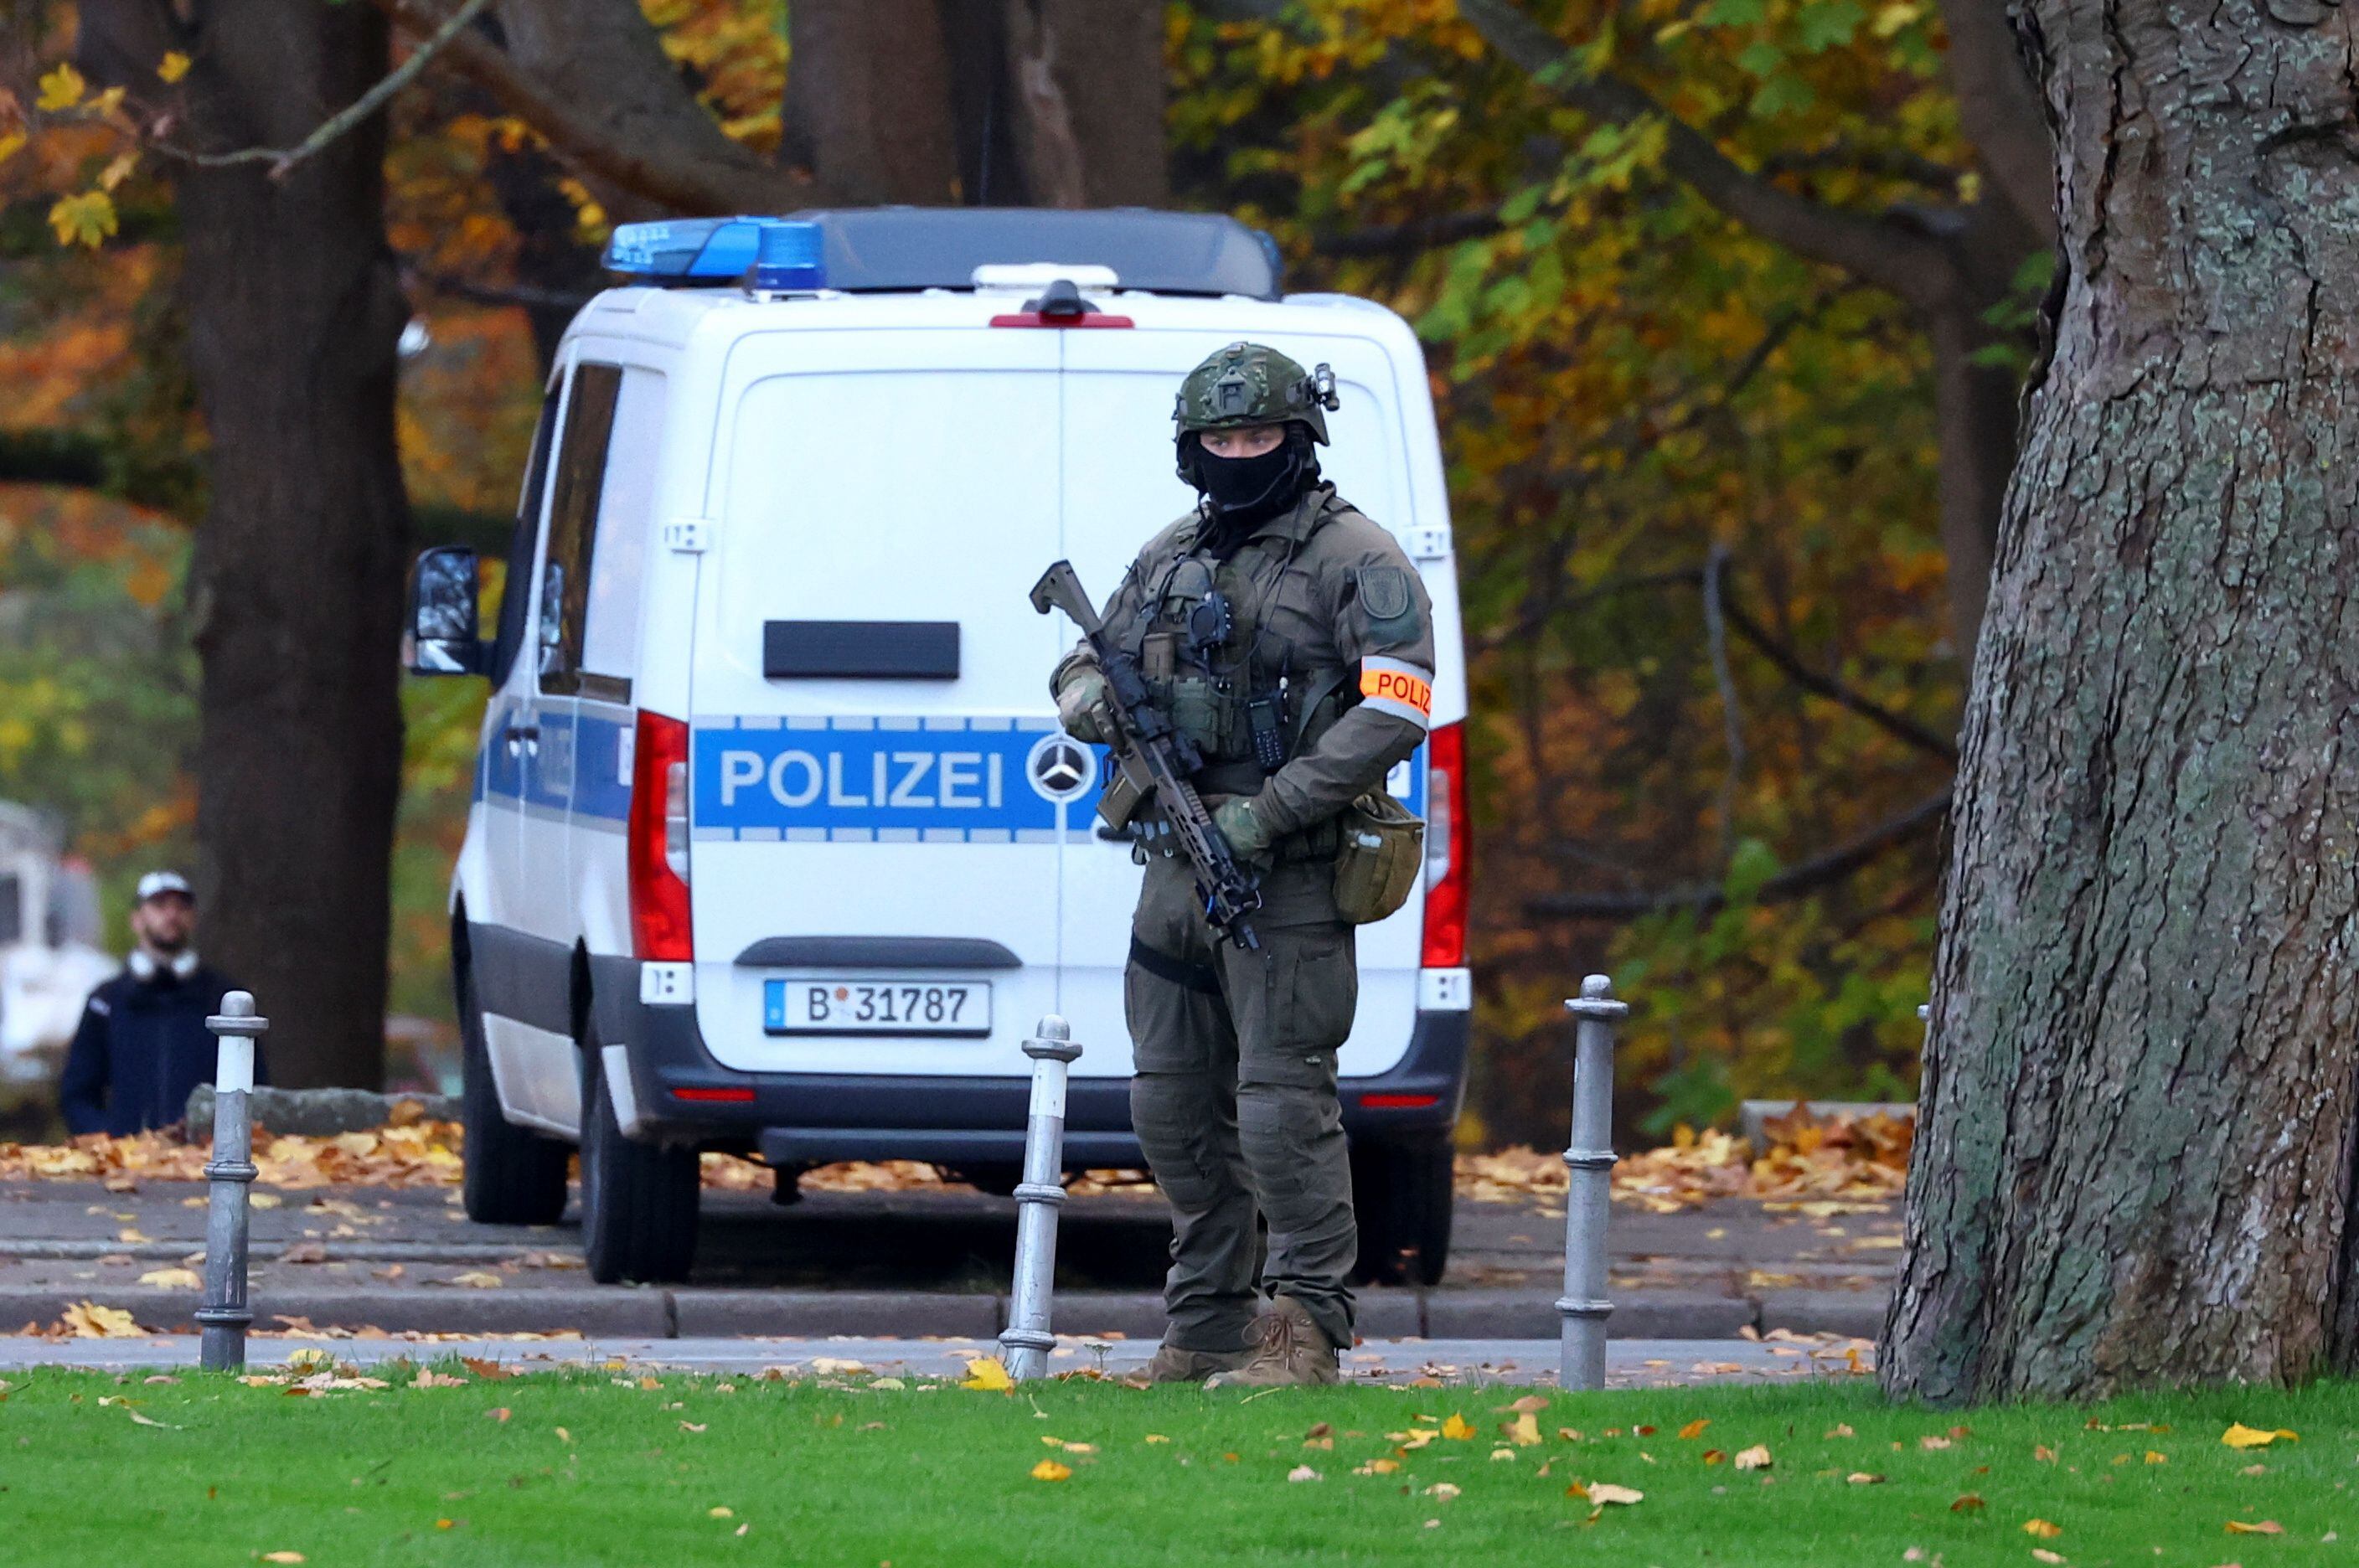 La Policía de Alemania allanó varias propiedades vinculadas al grupo terrorista Hamas y a la red propalestina Samidoun. (REUTERS/Fabrizio Bensch)